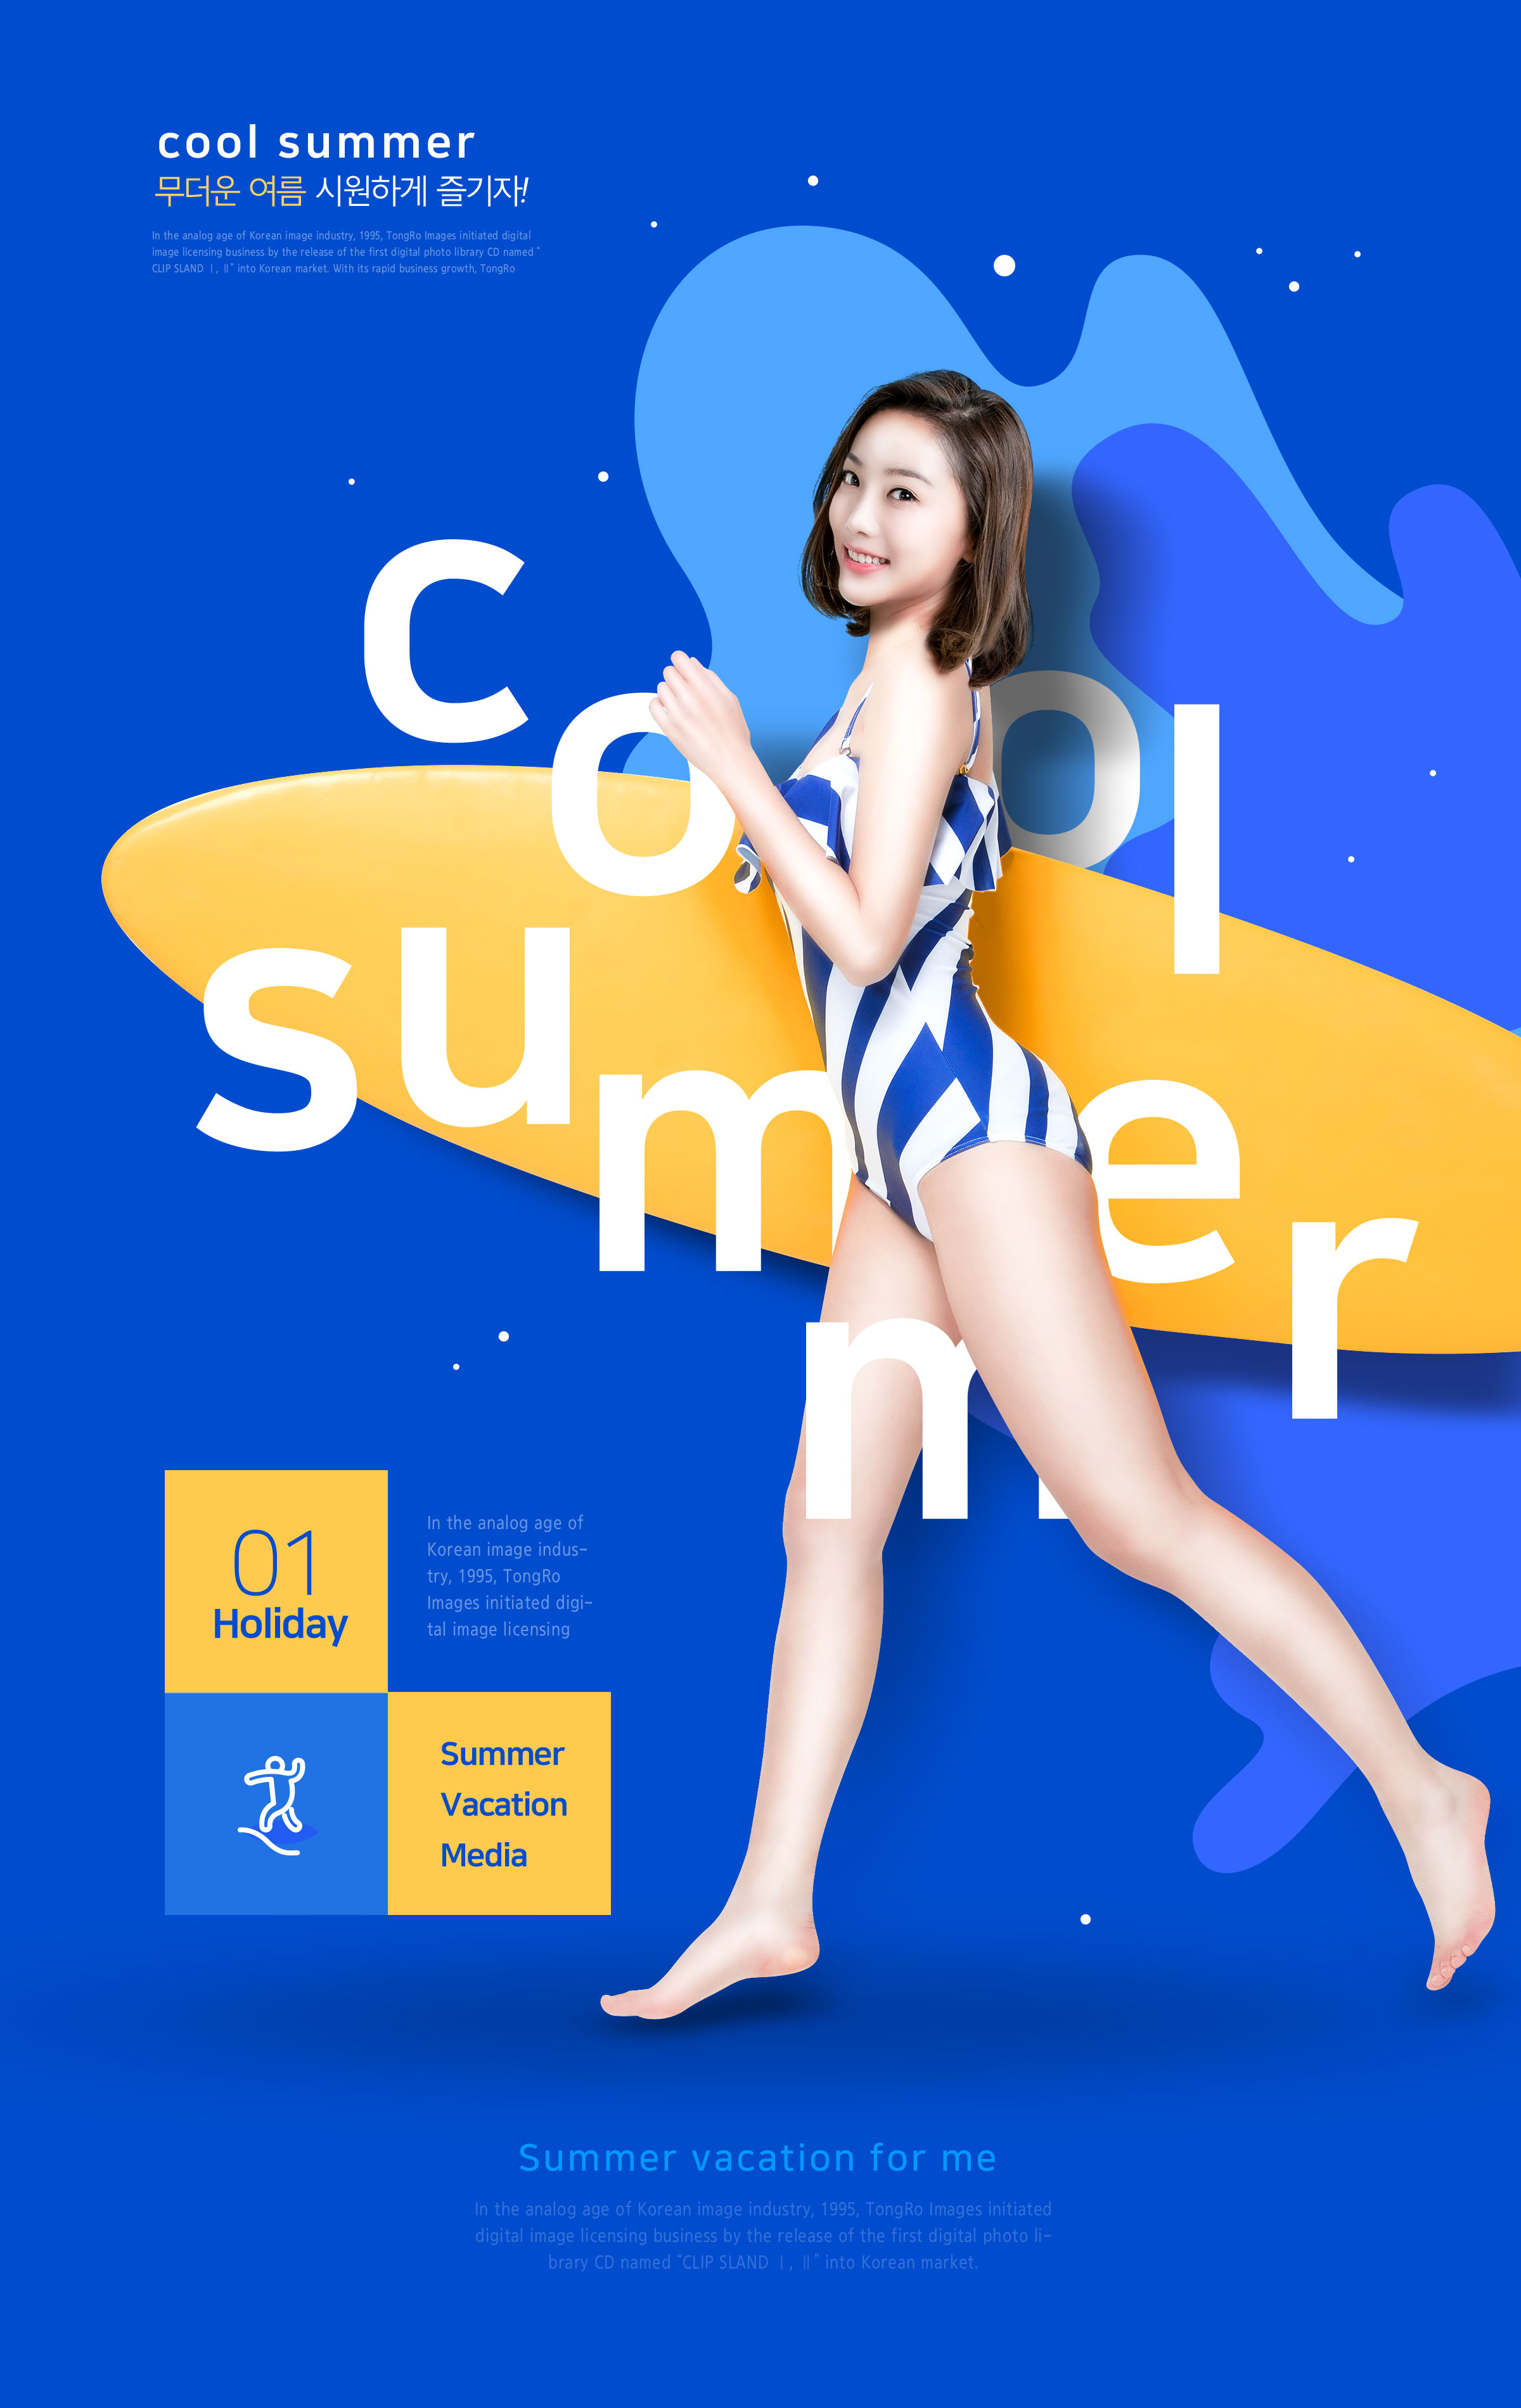 夏季酷暑冲浪活动宣传海报模板插图